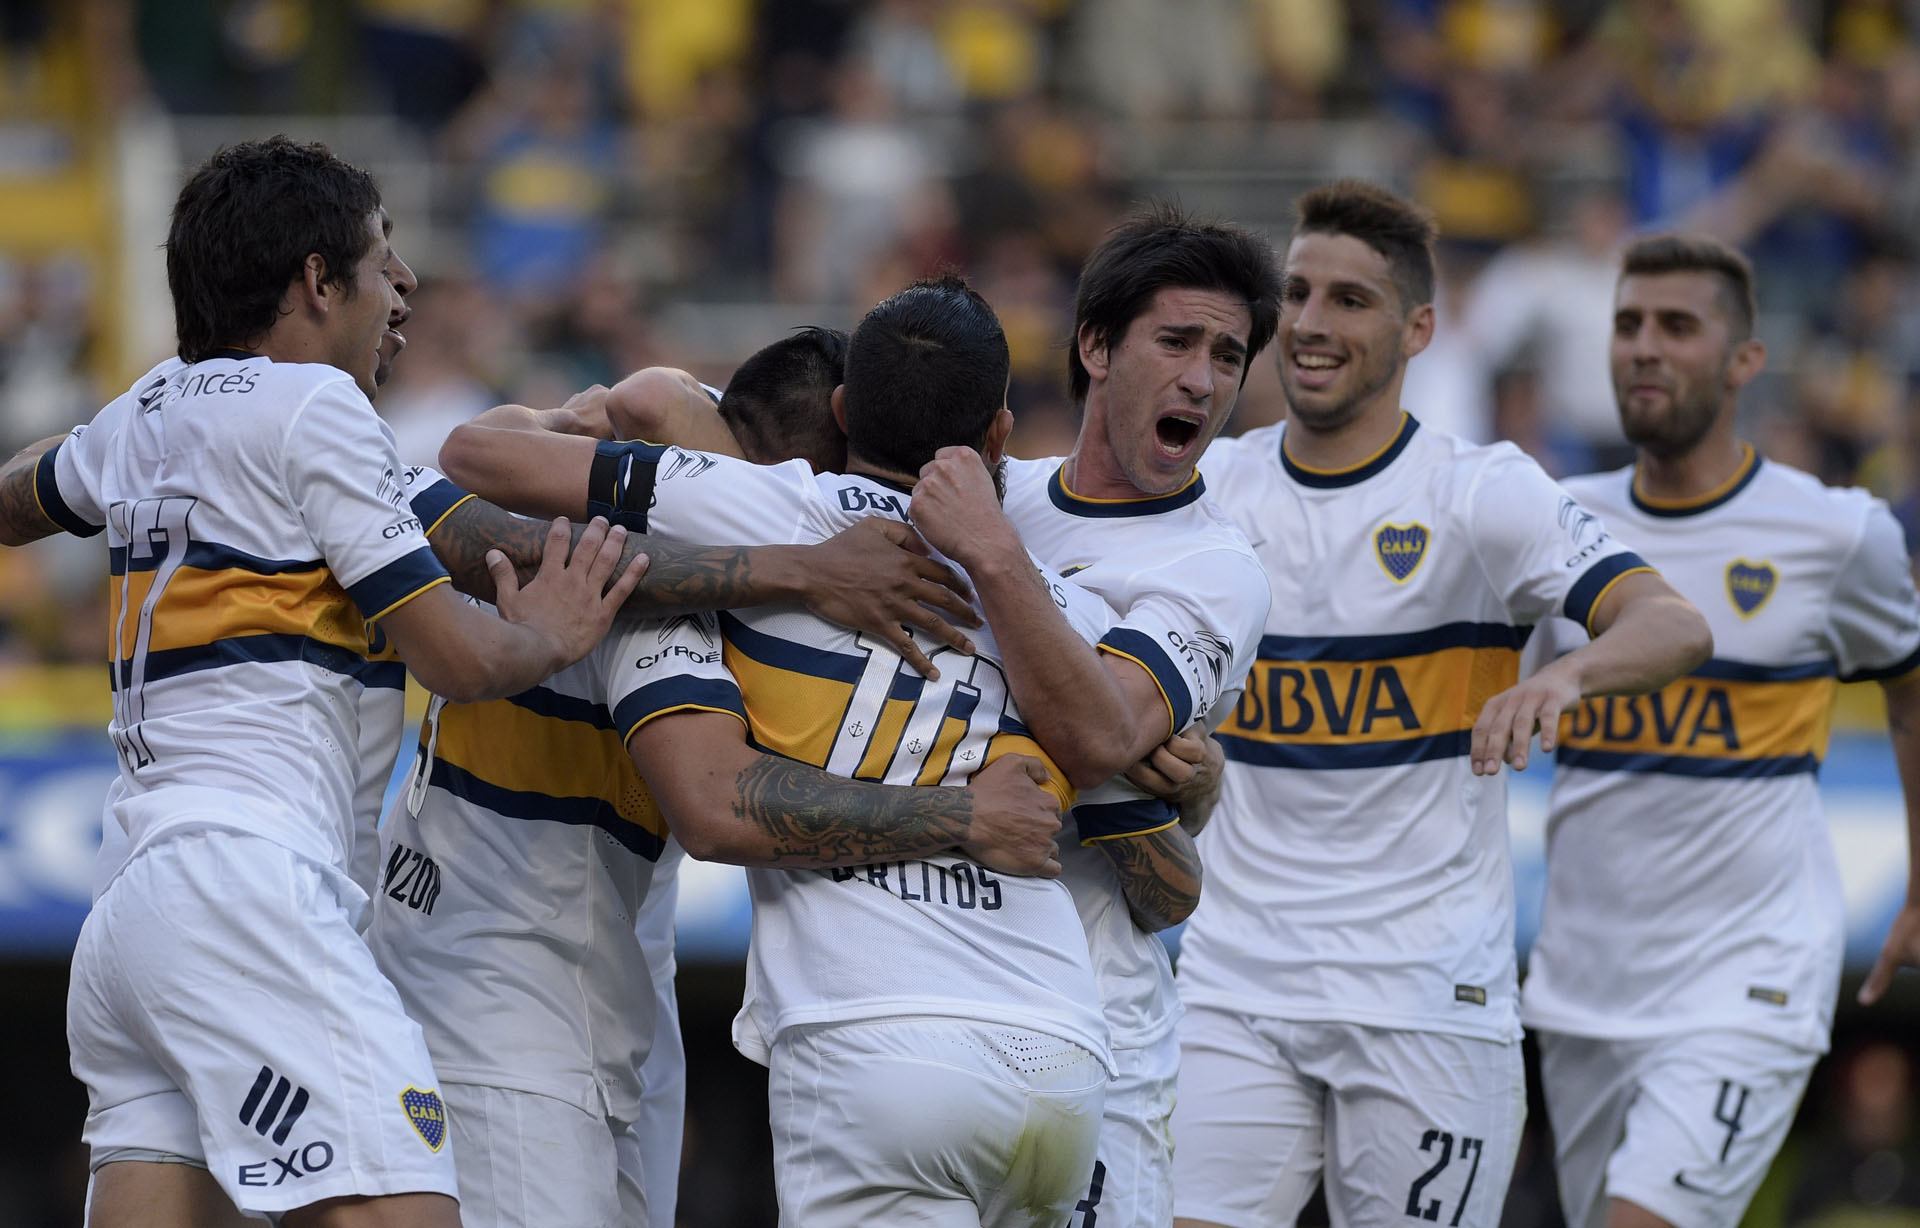 Boca, el popular club argentino, celebra otro título de la mano de Tevez (FOTOS)